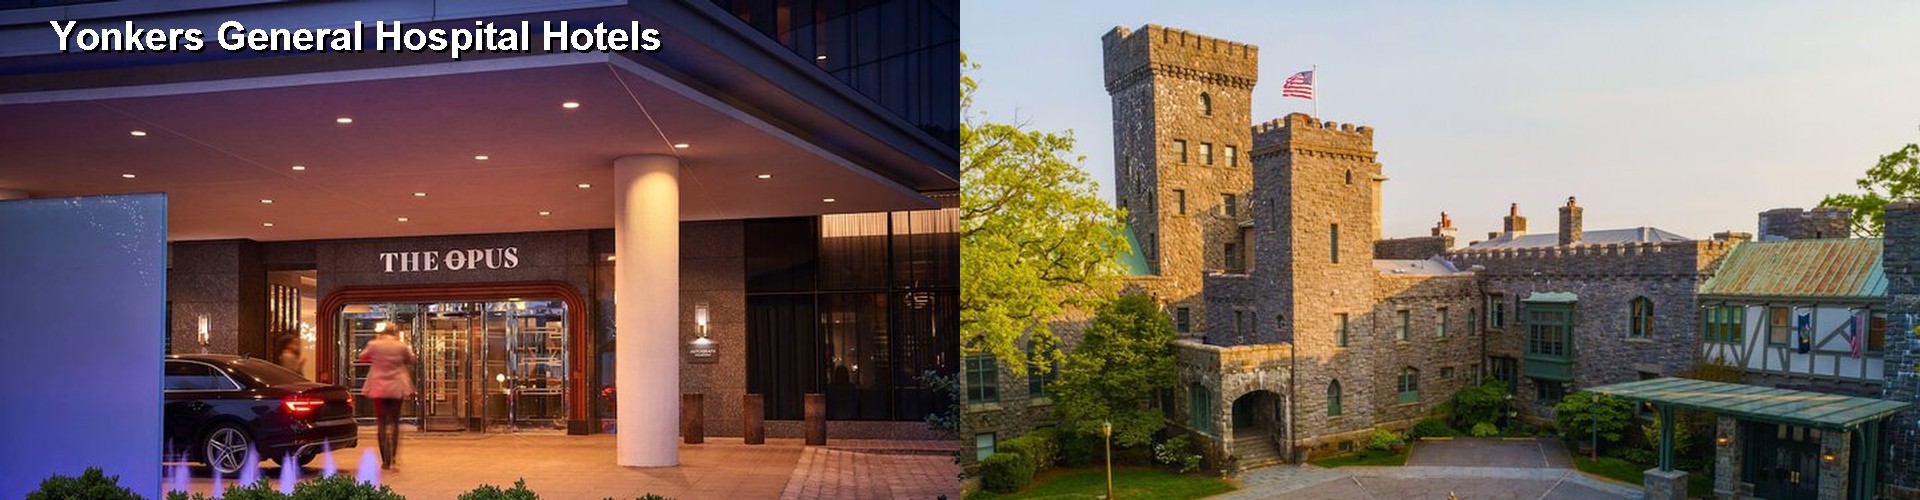 4 Best Hotels near Yonkers General Hospital